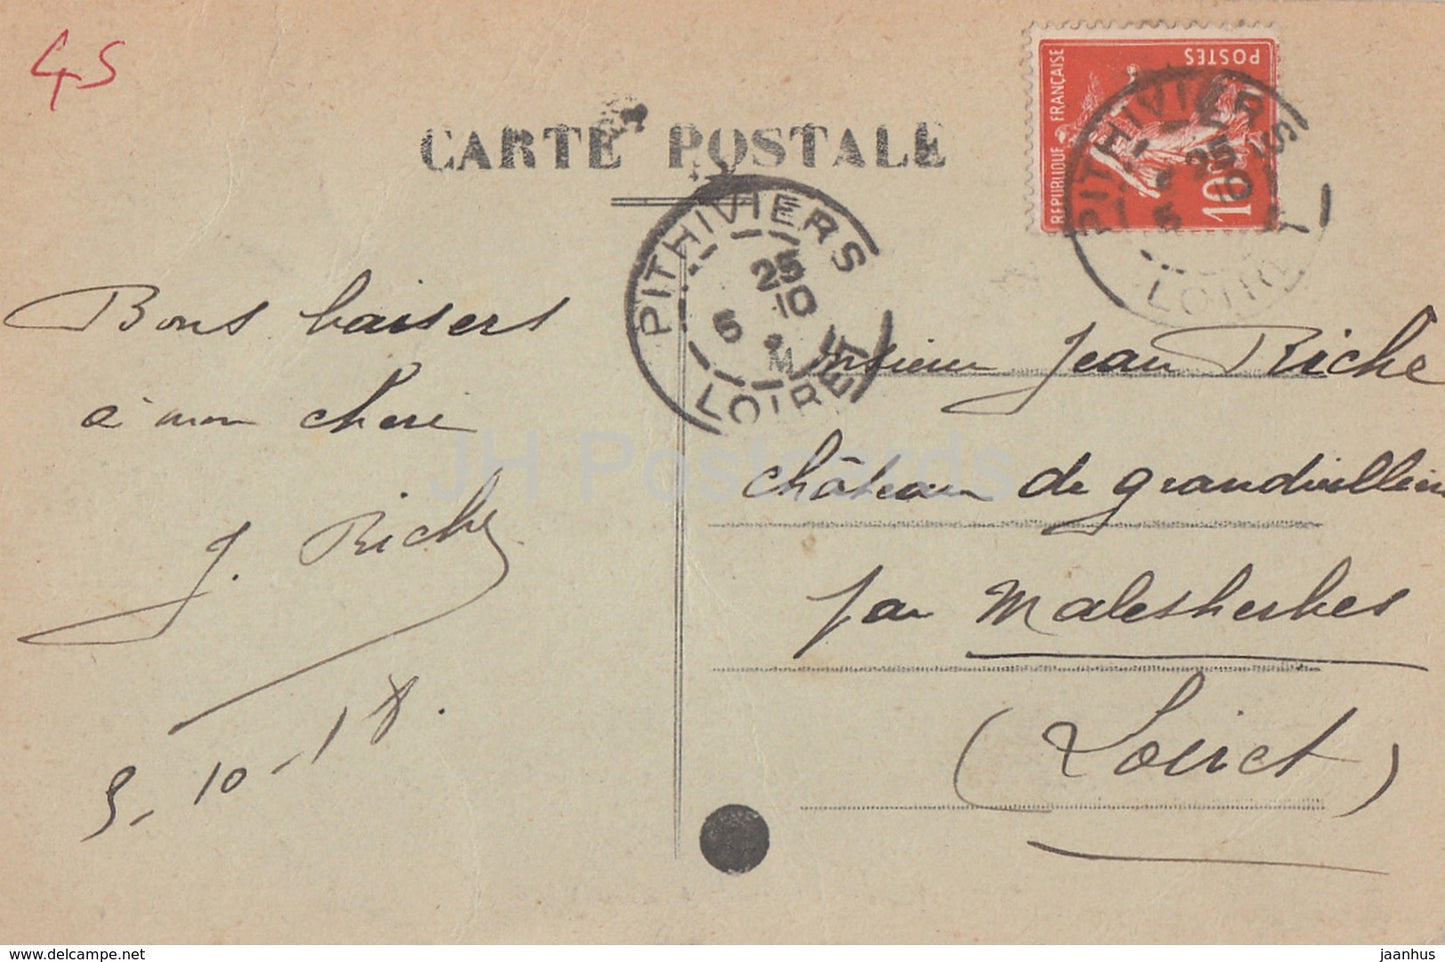 Pithiviers - Chateau de St Pierre A la Groue - castle - old postcard - 1918 - France - used